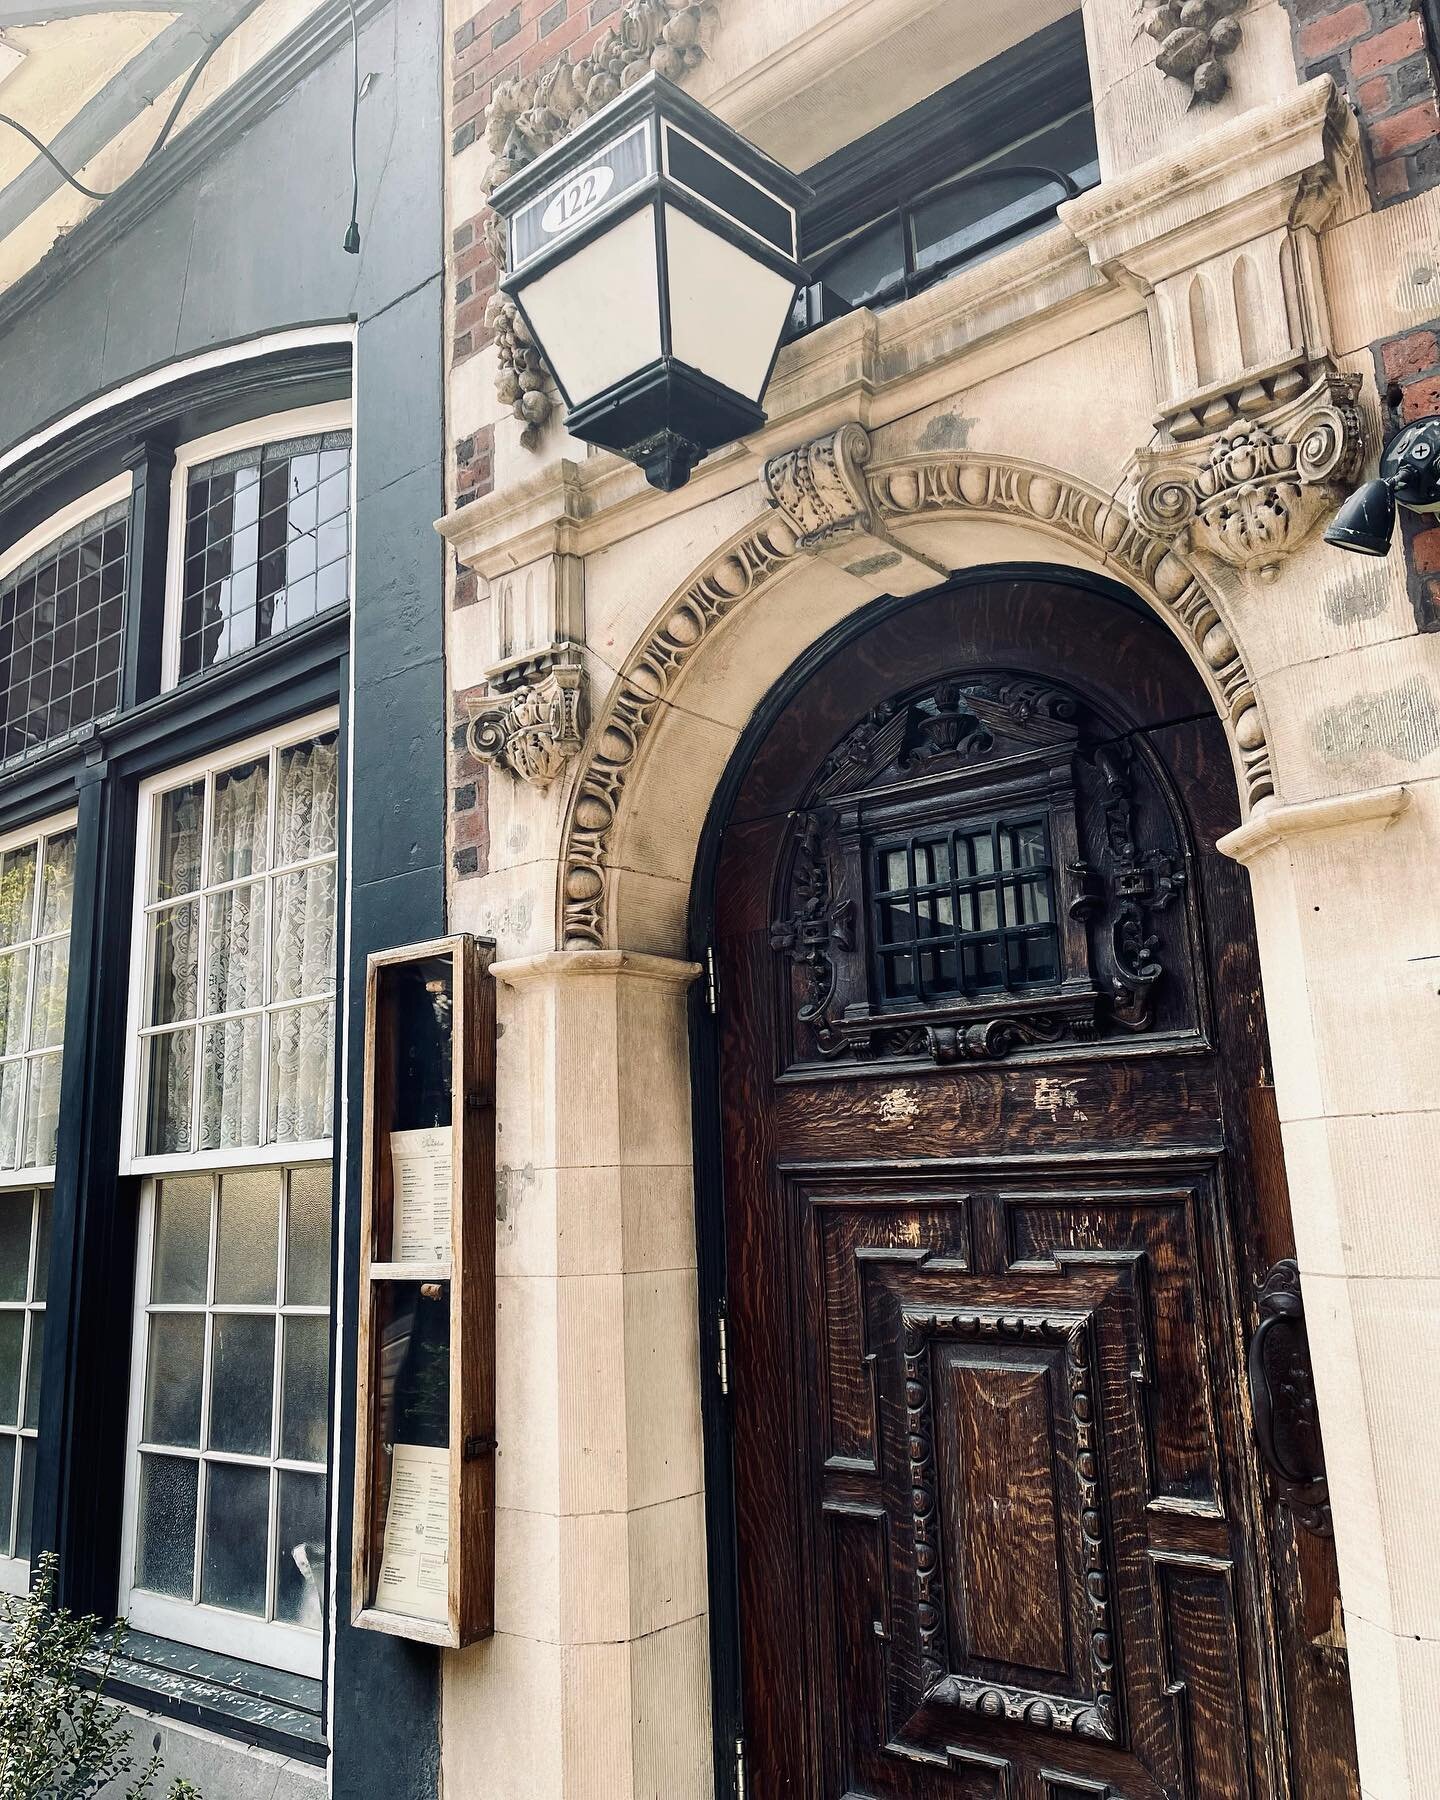 Can a door be Sexy? 
.
.
.
.
.
#thedandelion #rittenhouse #patravel #pennsylvaniatravel #britishfood #richarchitecture #architectureinspo #moodyaesthetic #architecturelovers #detaileddoor #doorsofinstagram #woodendoor #moodytones